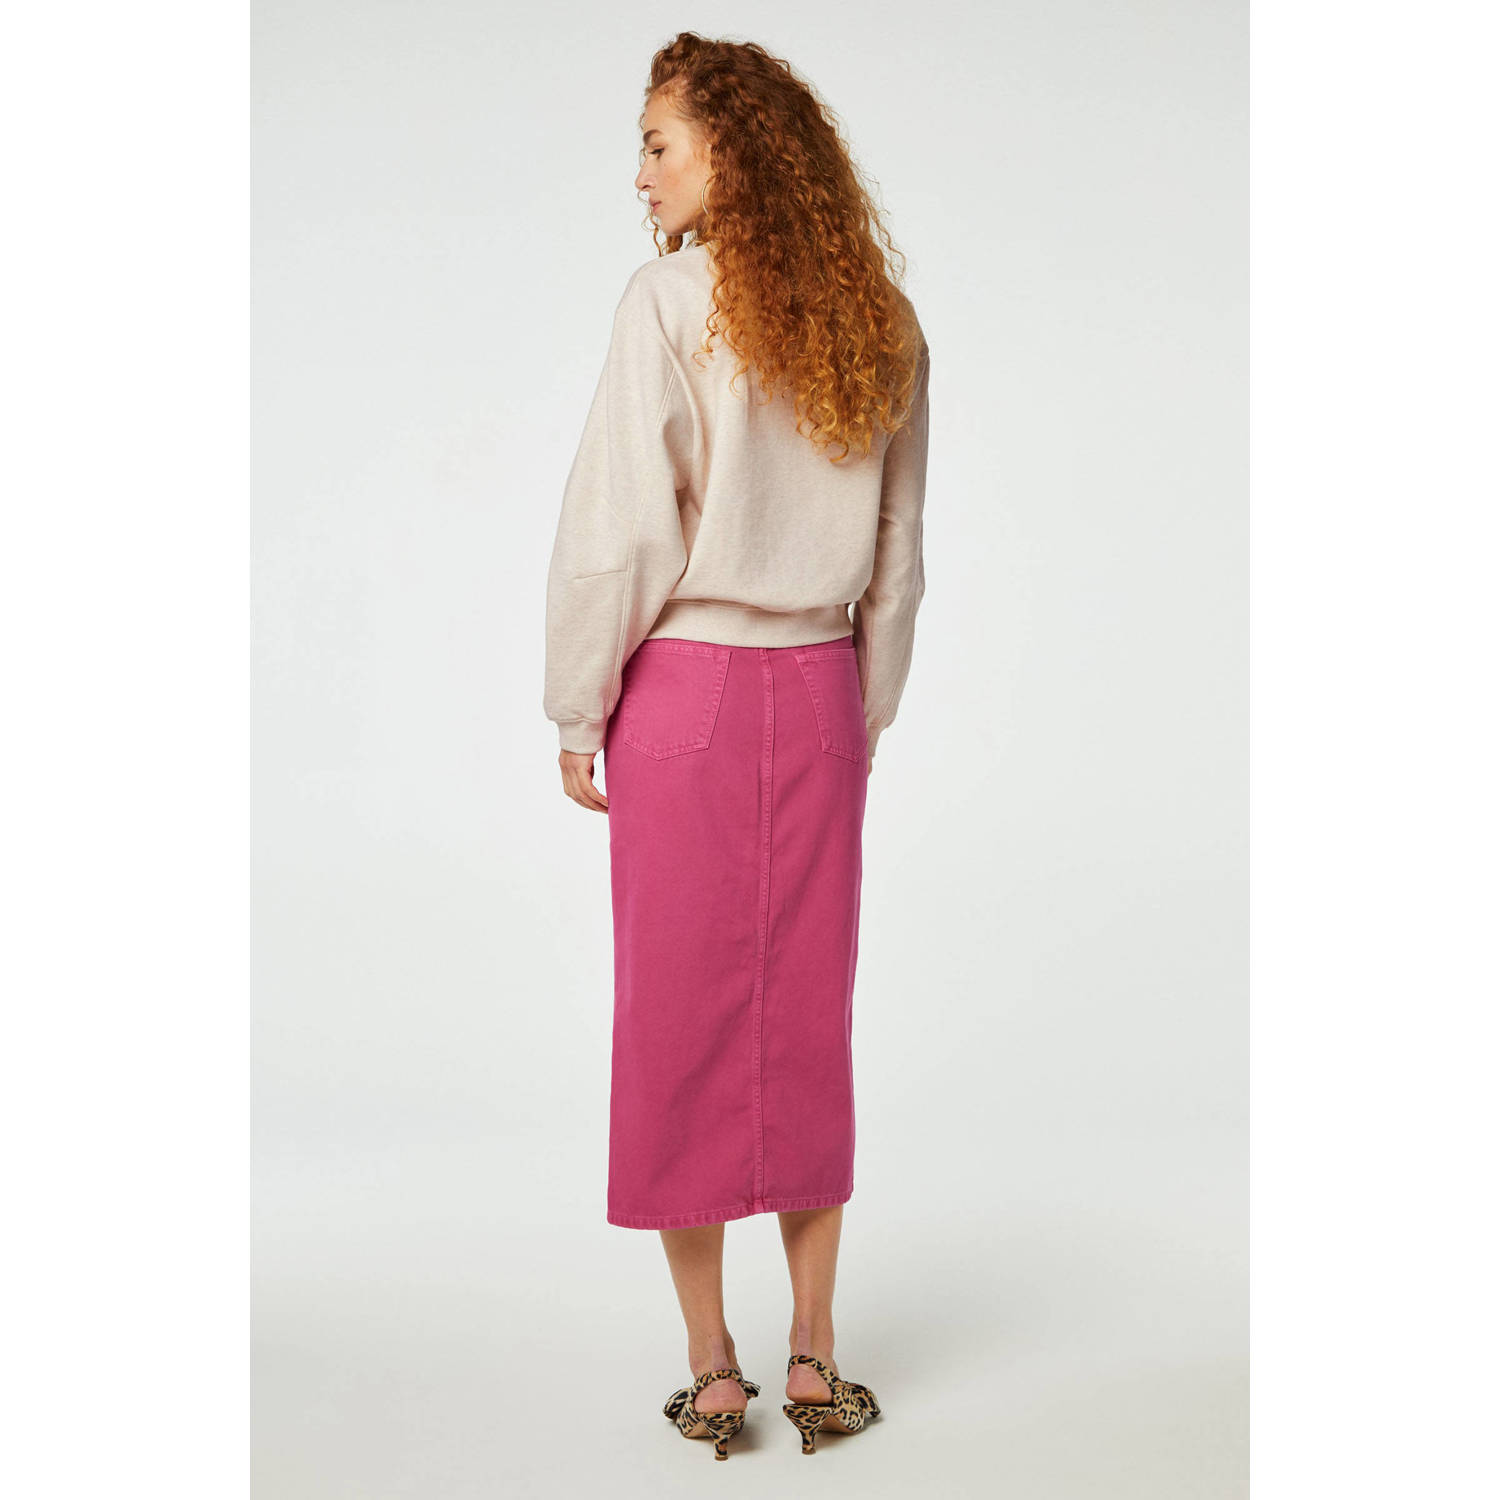 Fabienne Chapot sweater Pam met printopdruk en borduursels grijs roze